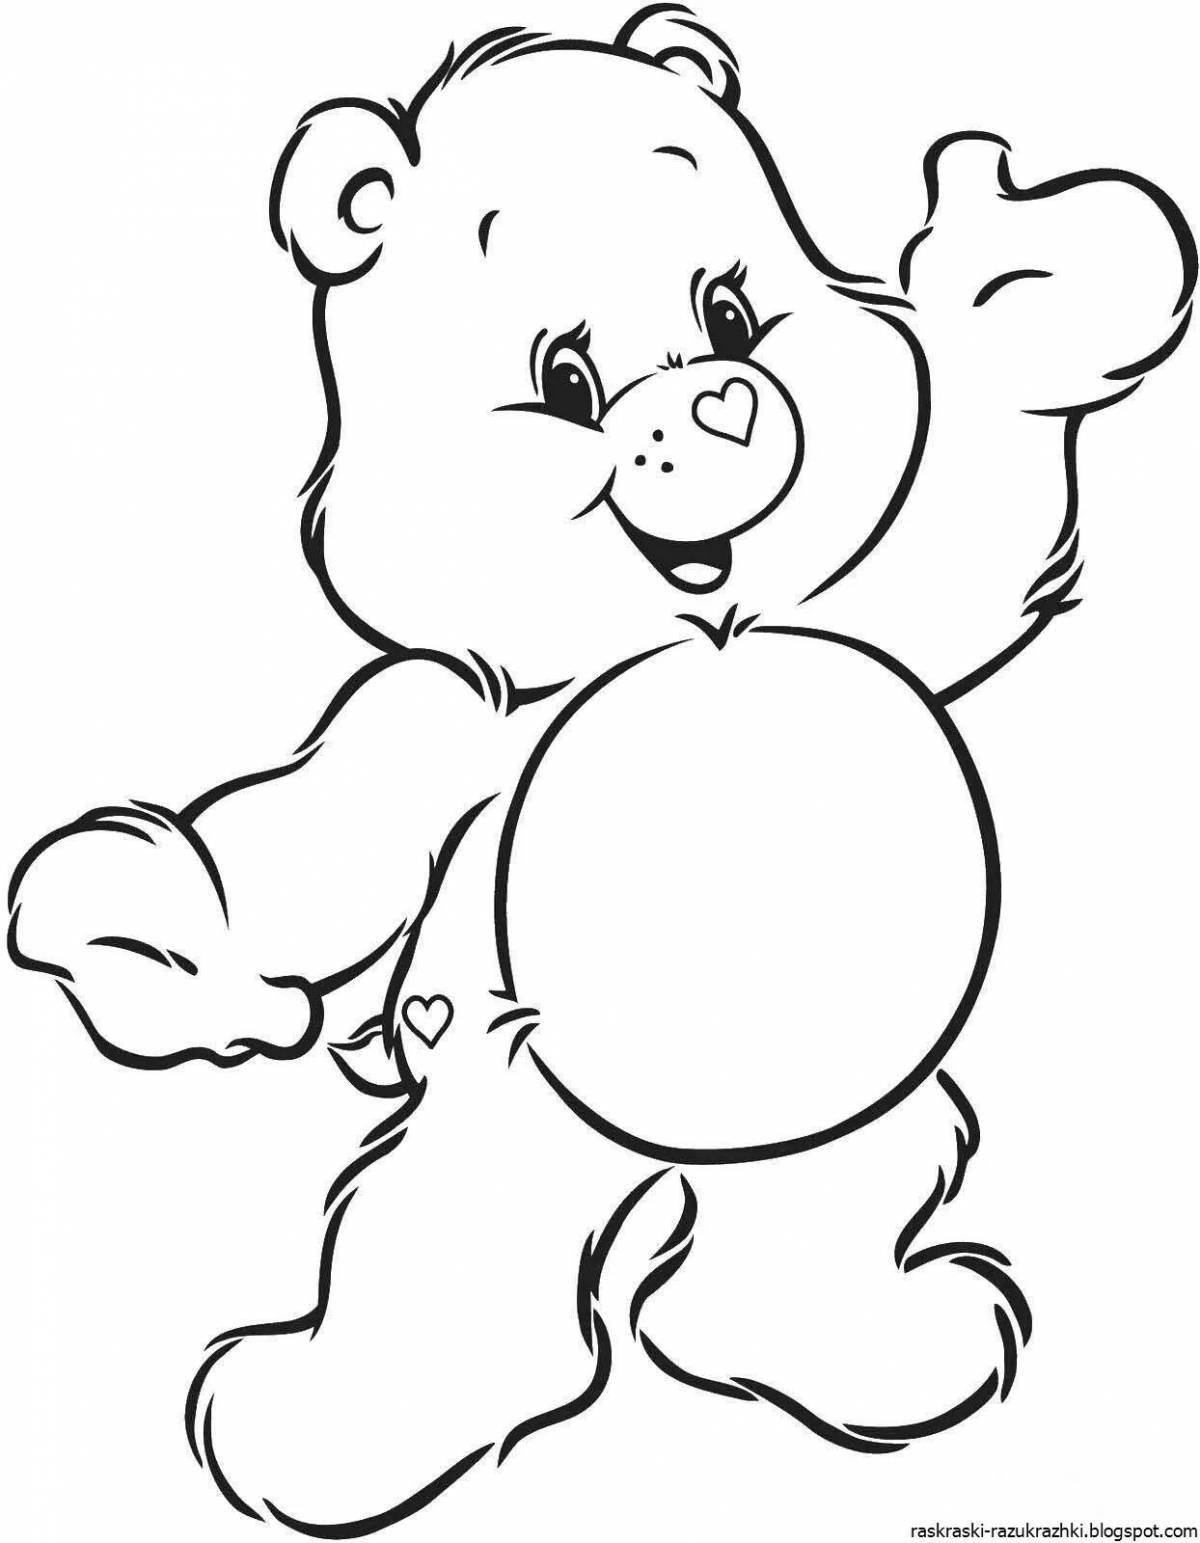 Fun teddy bear drawing for kids